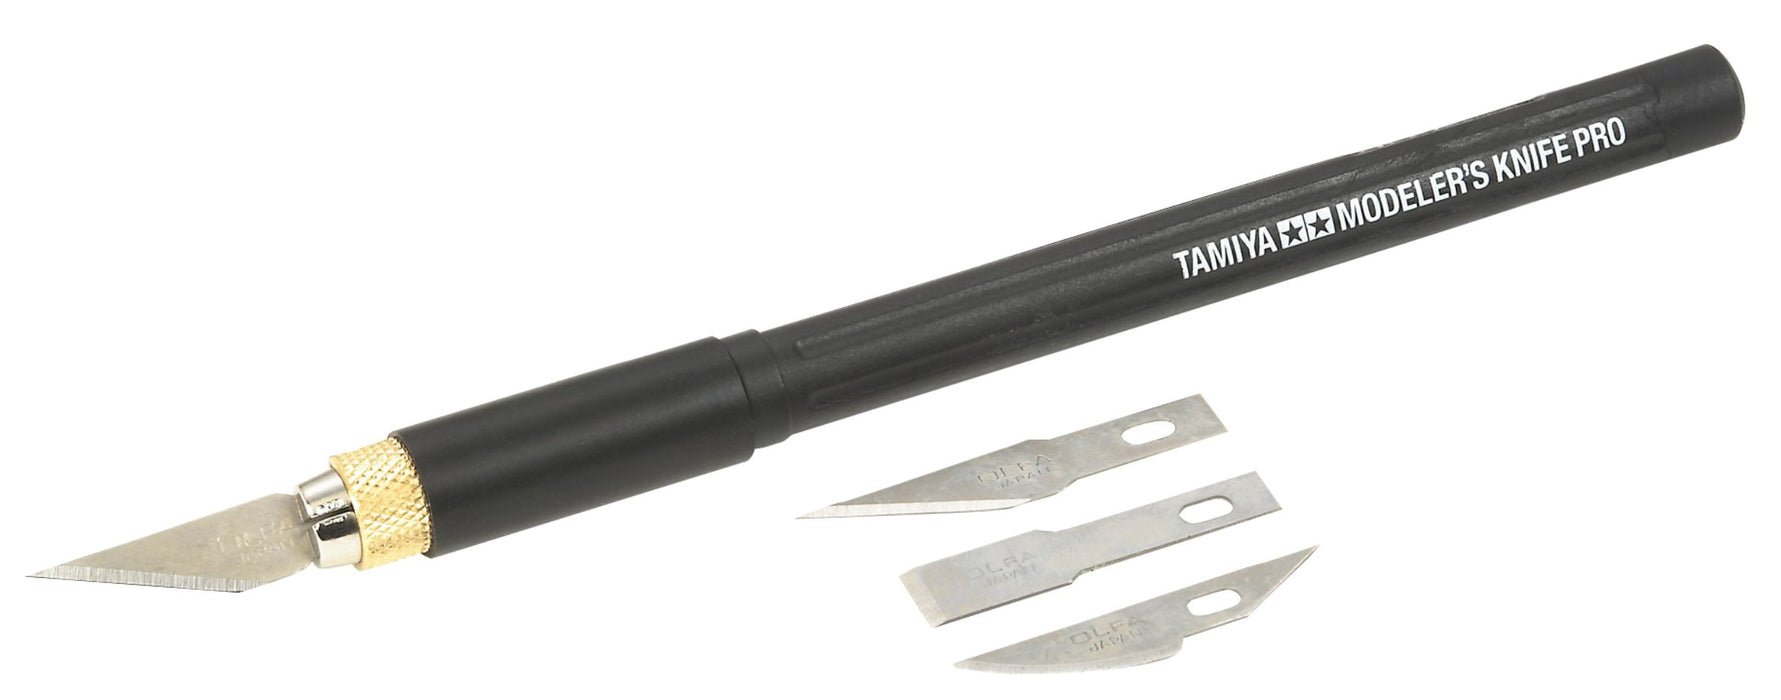 Tamiya 74098 Modeler's Knife Pro Outil de modélisme en plastique